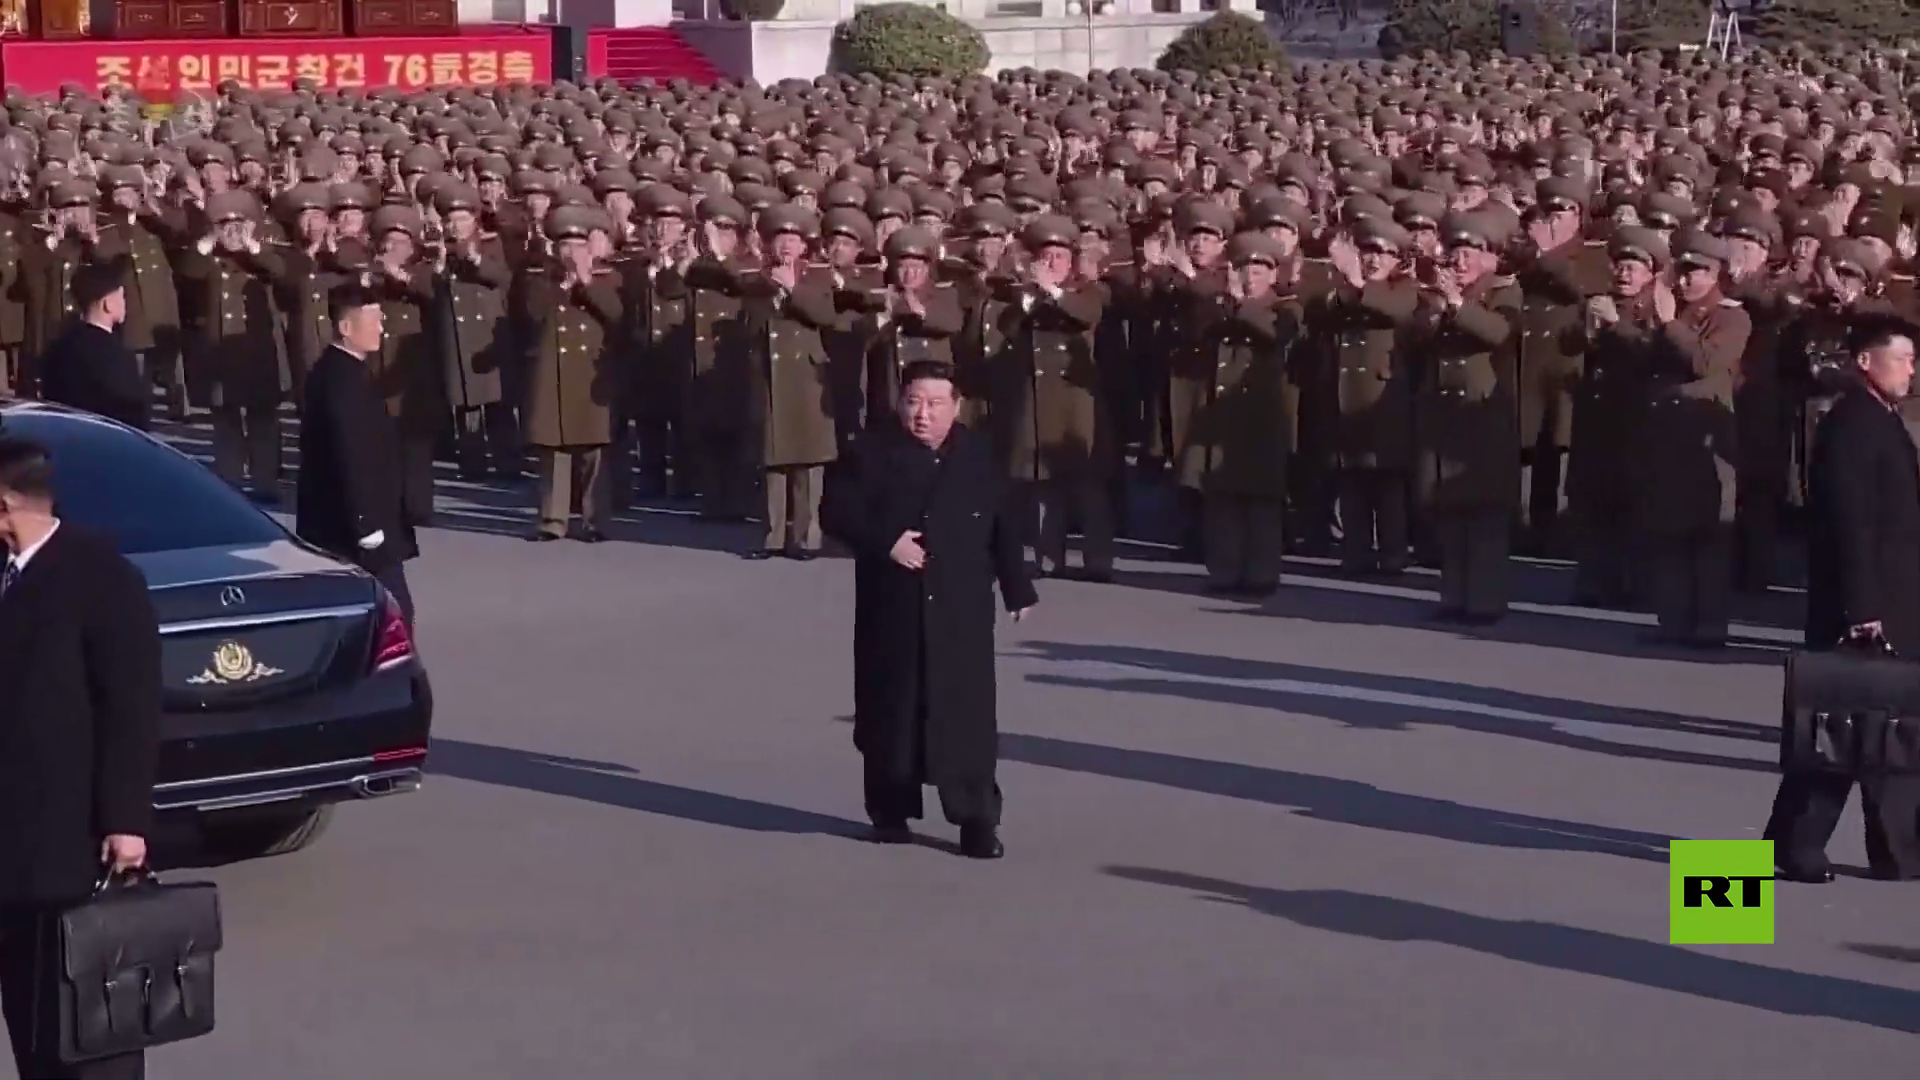 ظهور لافت لزعيم كوريا الشمالية كيم جونغ أون وابنته أثناء احتفالات بعيد الجيش في بيونغ يانغ